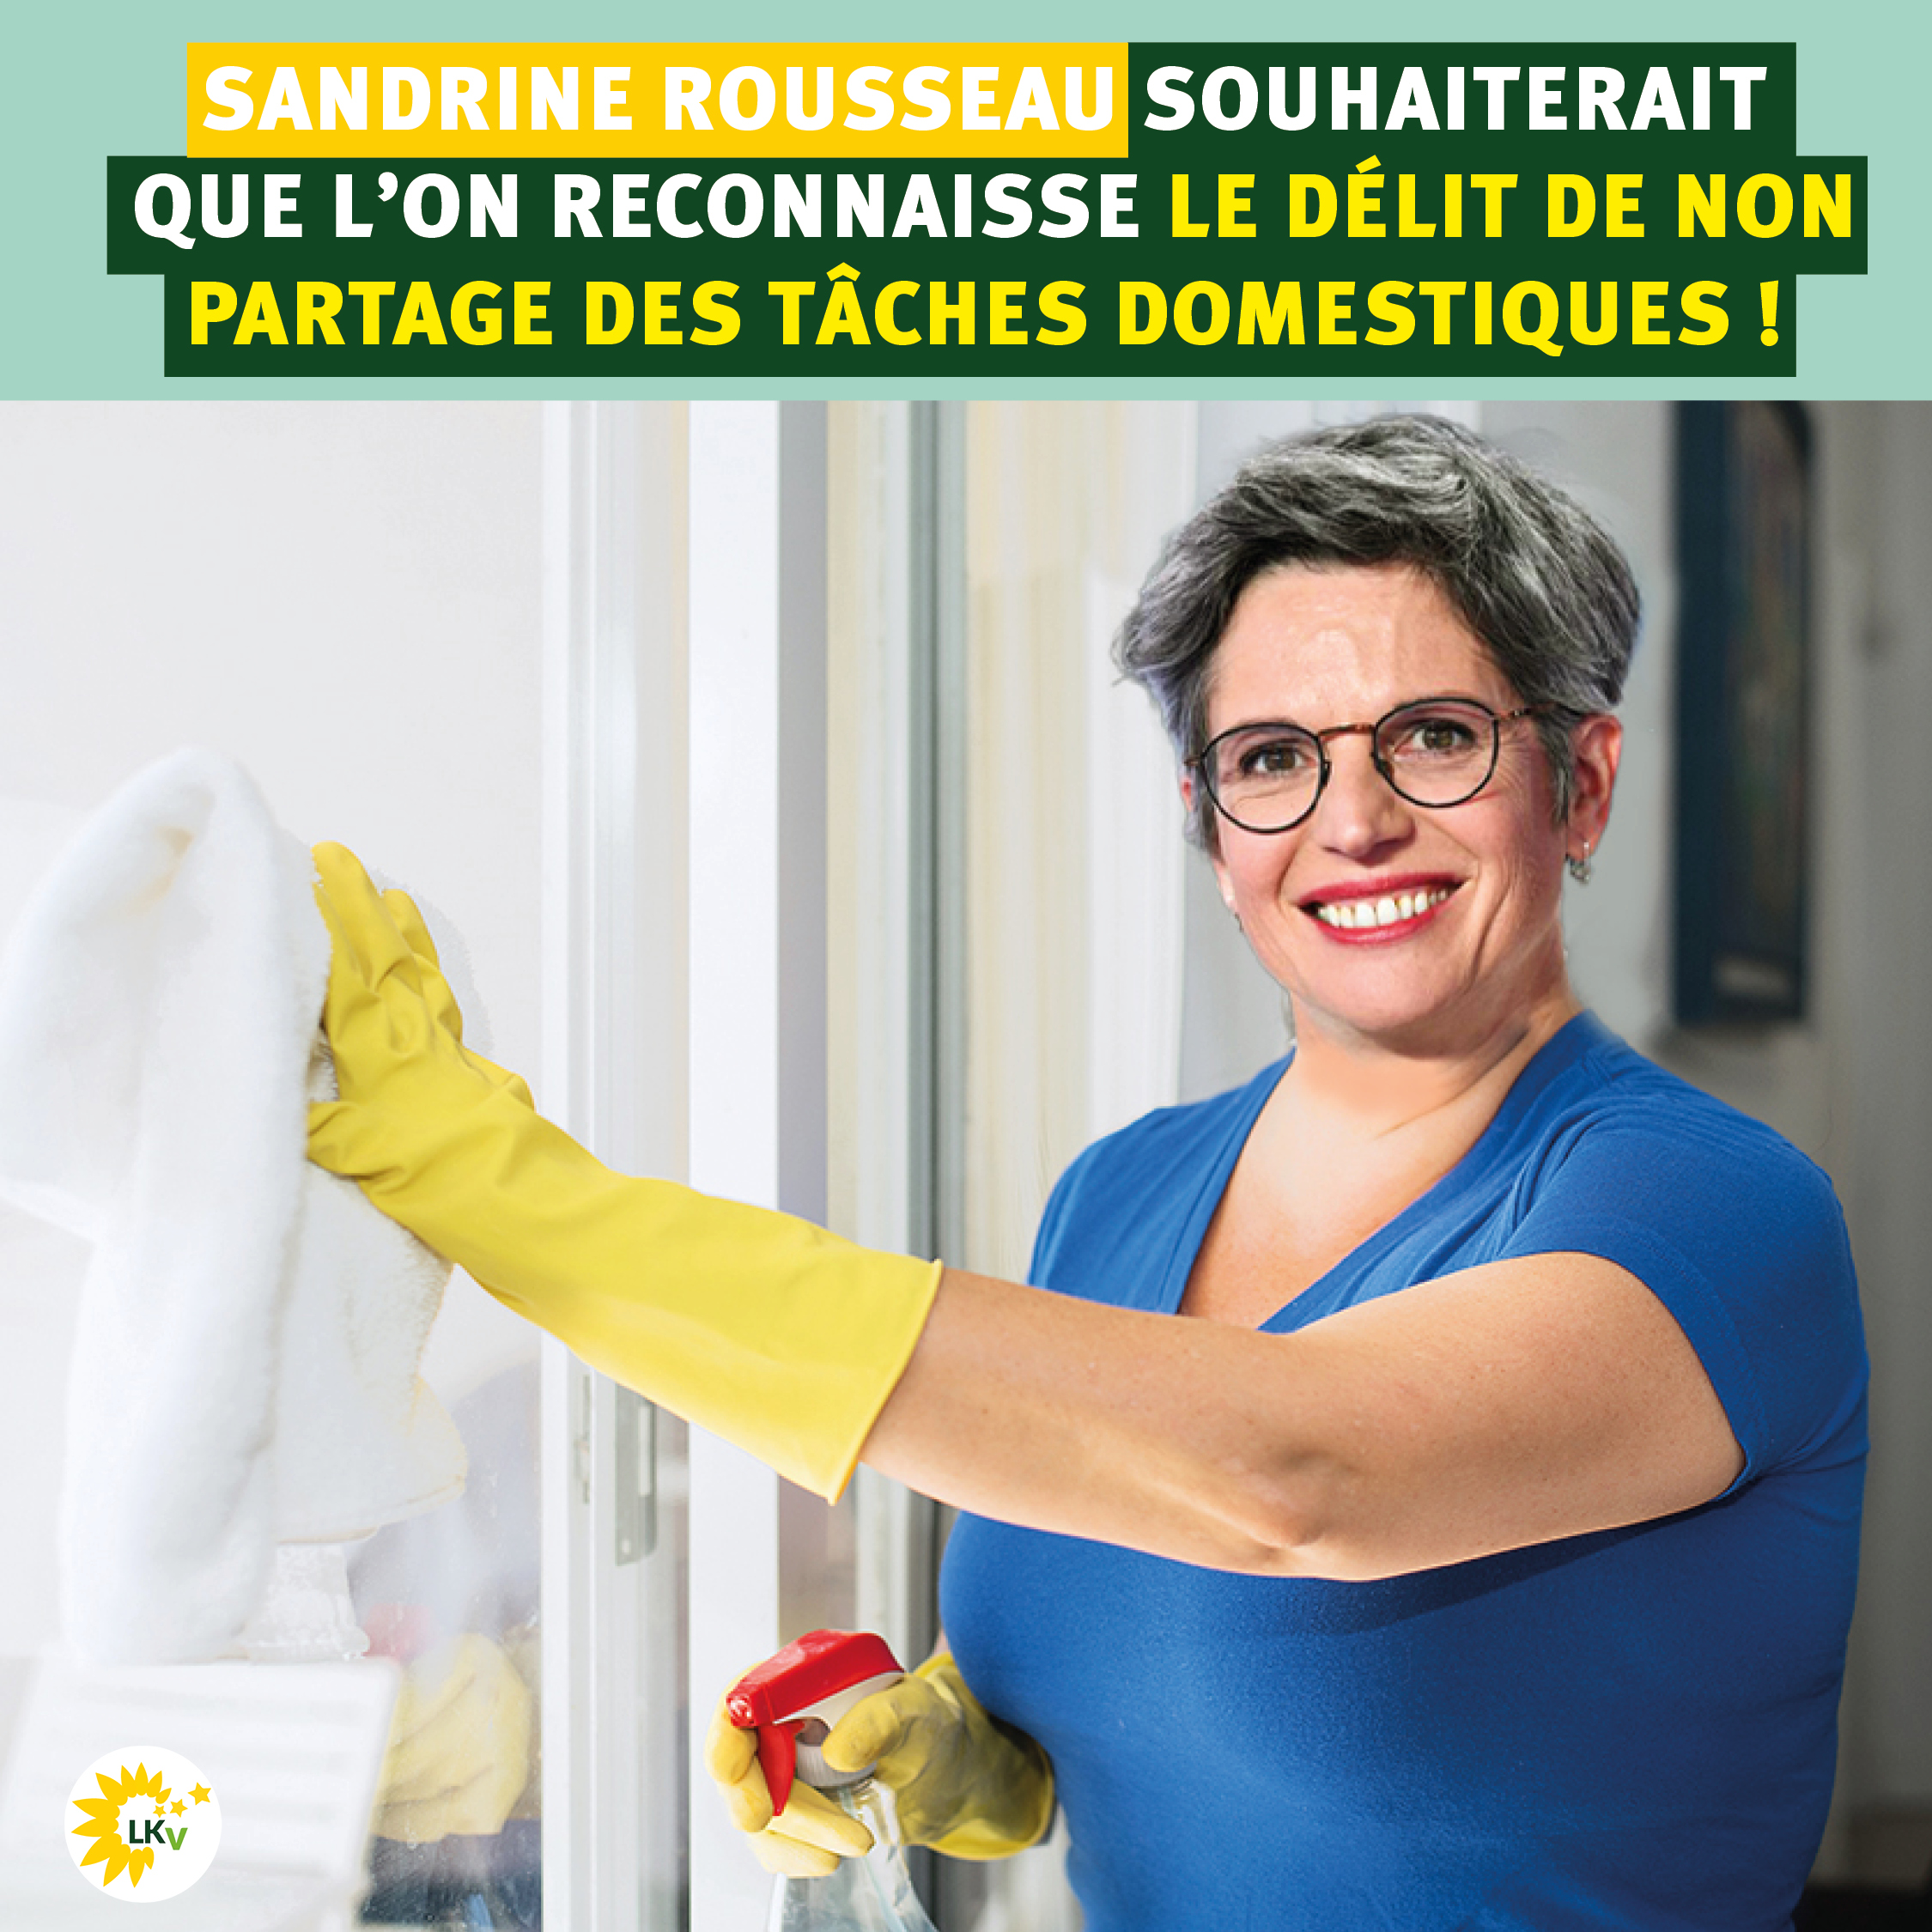 Les Khmers Verts on Twitter: "Nettoyer, balayer, astiquer… Sandrine Rousseau souhaiterait que l'on reconnaisse le « délit de non-partage des tâches domestiques ». Comprenez… Les hommes ne sont pas assez déconstruits ! #